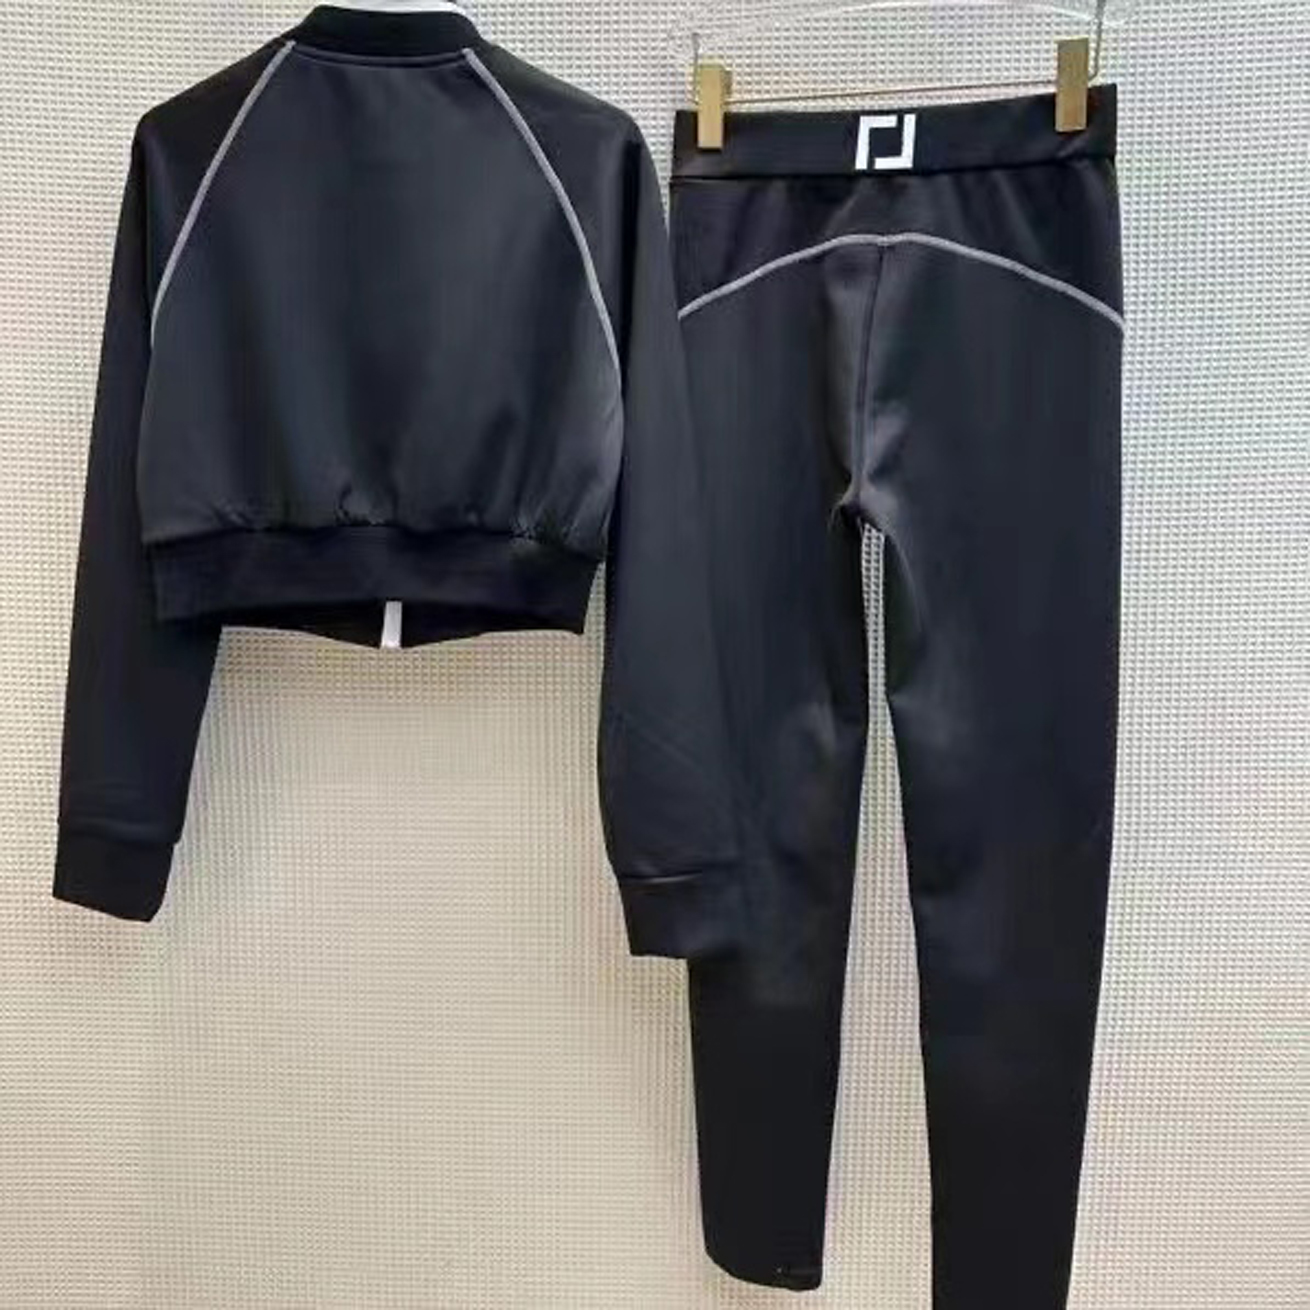 디자이너 여성 재킷 2 조각 세트 바지의 옷 겉옷 럭셔리 브랜드 의류 이중 F 긴 슬리브 레저 스타일 스포츠웨어 크기 SMLXL A188138